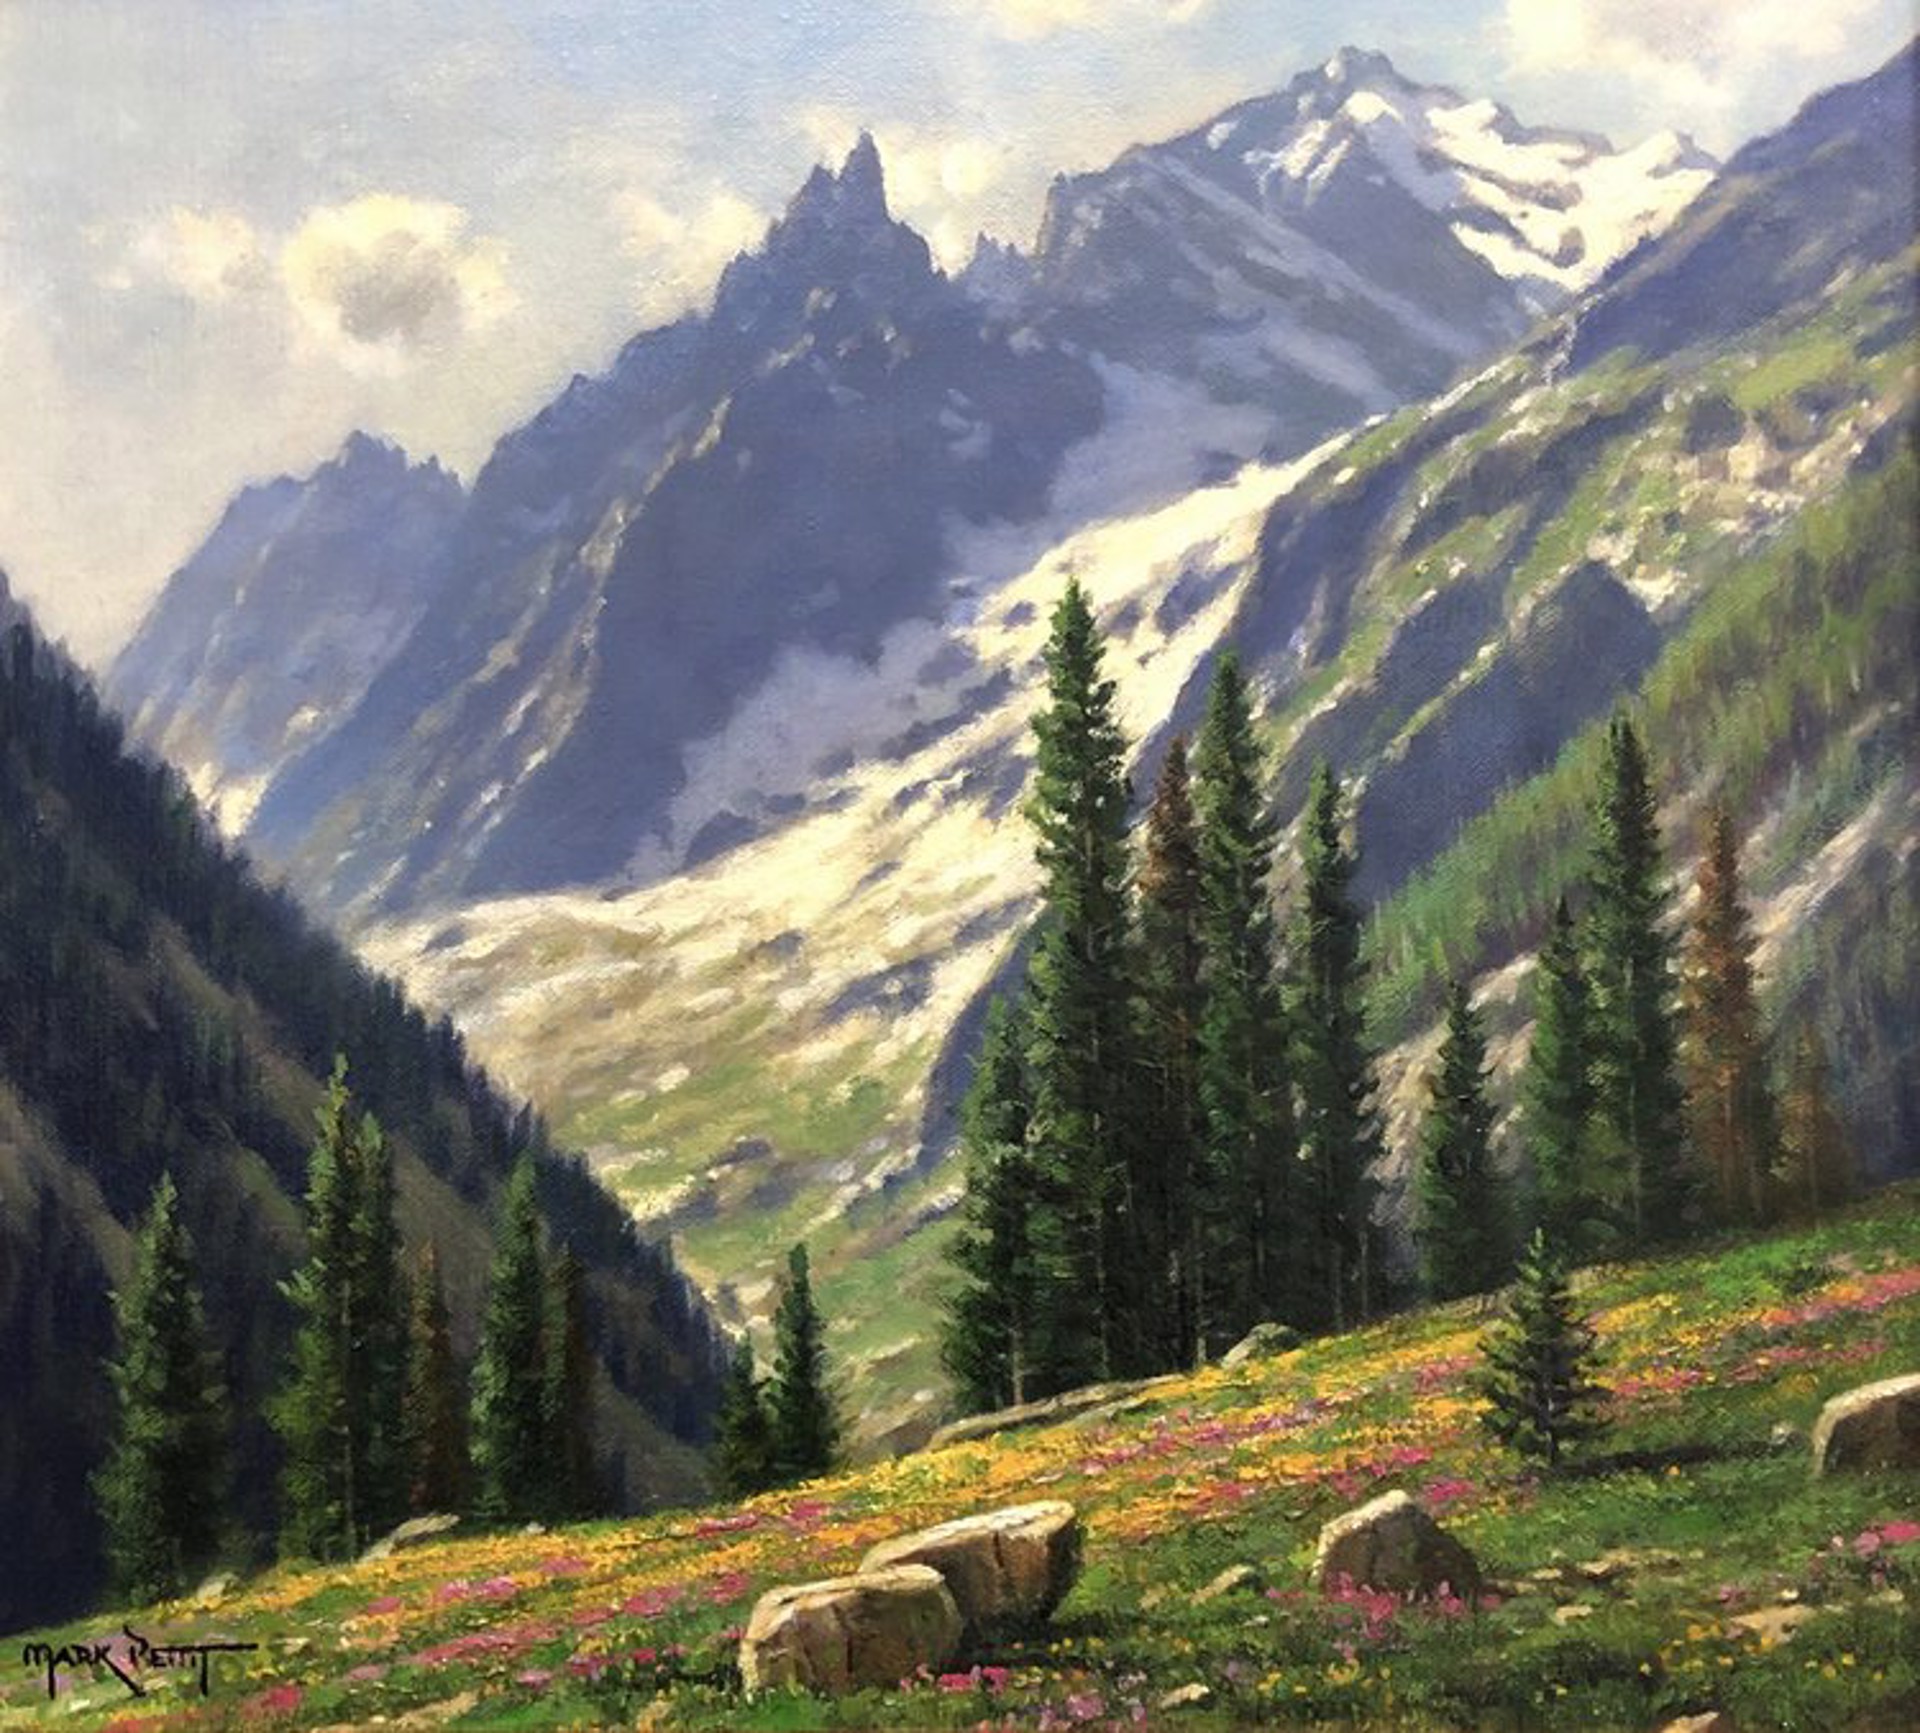 Alpine Meadow by Mark Pettit